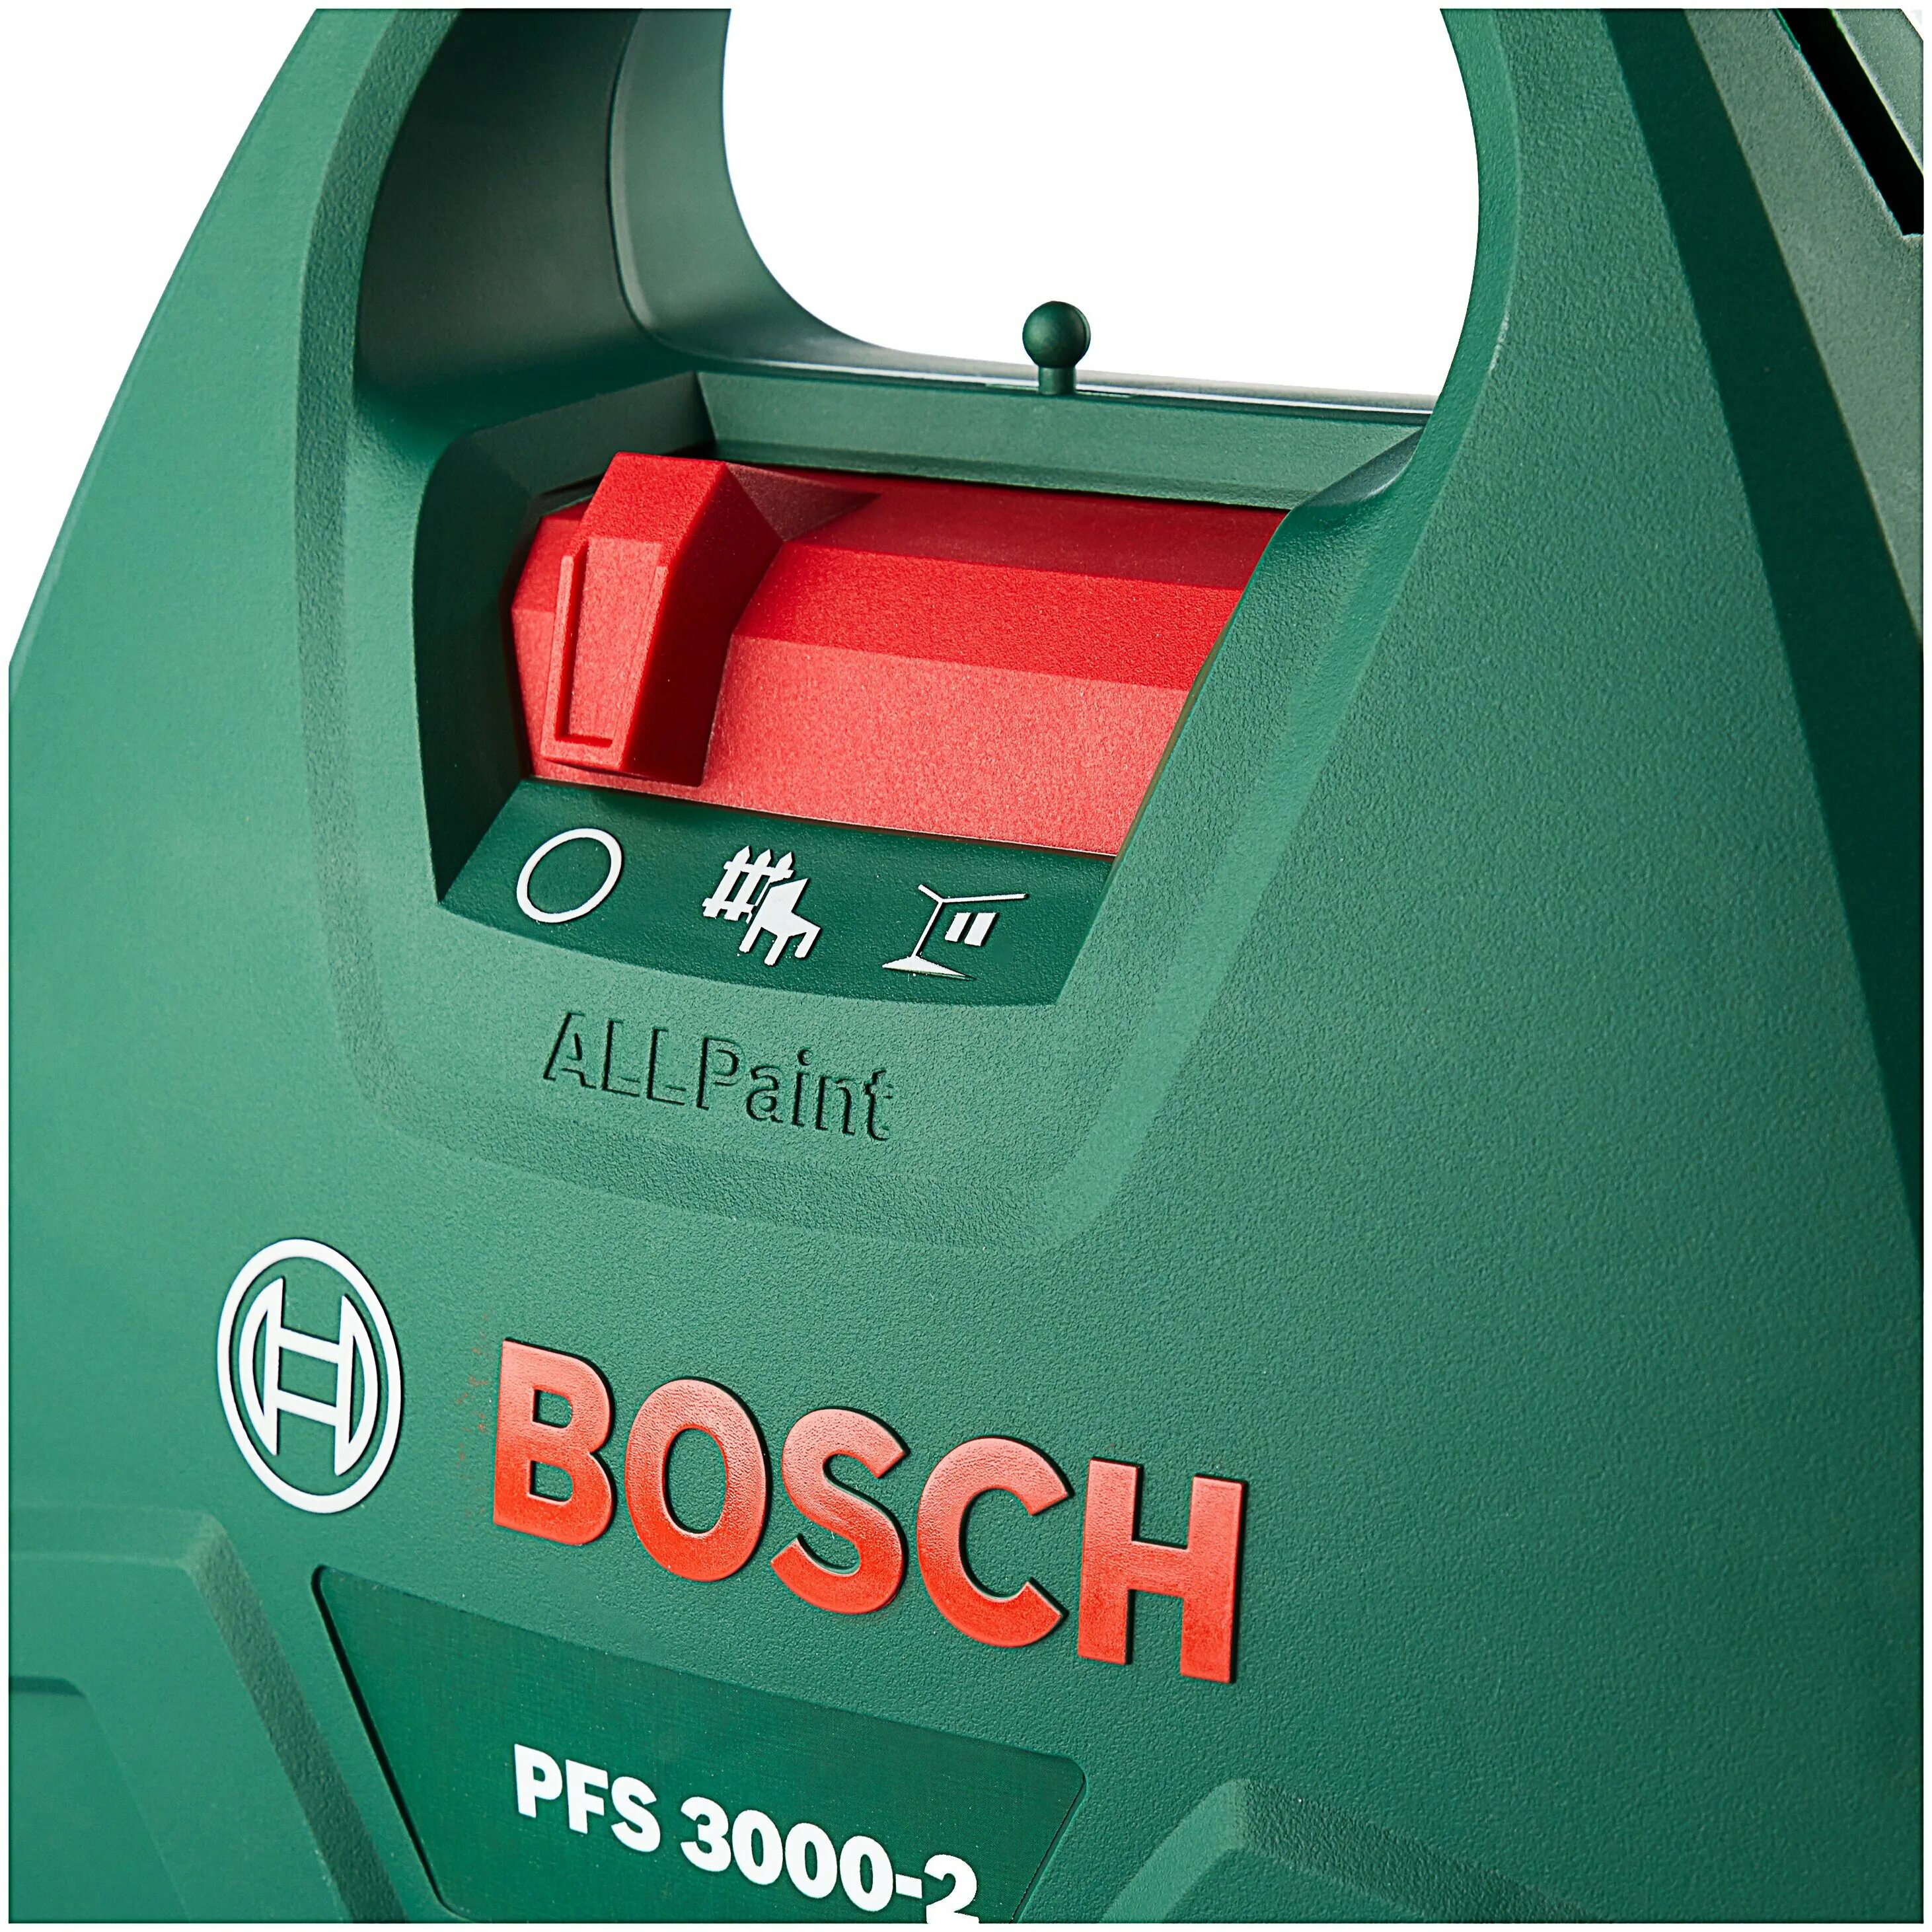 Bosch pfs 3000 2. Бош ПФС 3000. Краскопульт Bosch PFS 3000. Краскопульт Bosch PFS 3000-2.